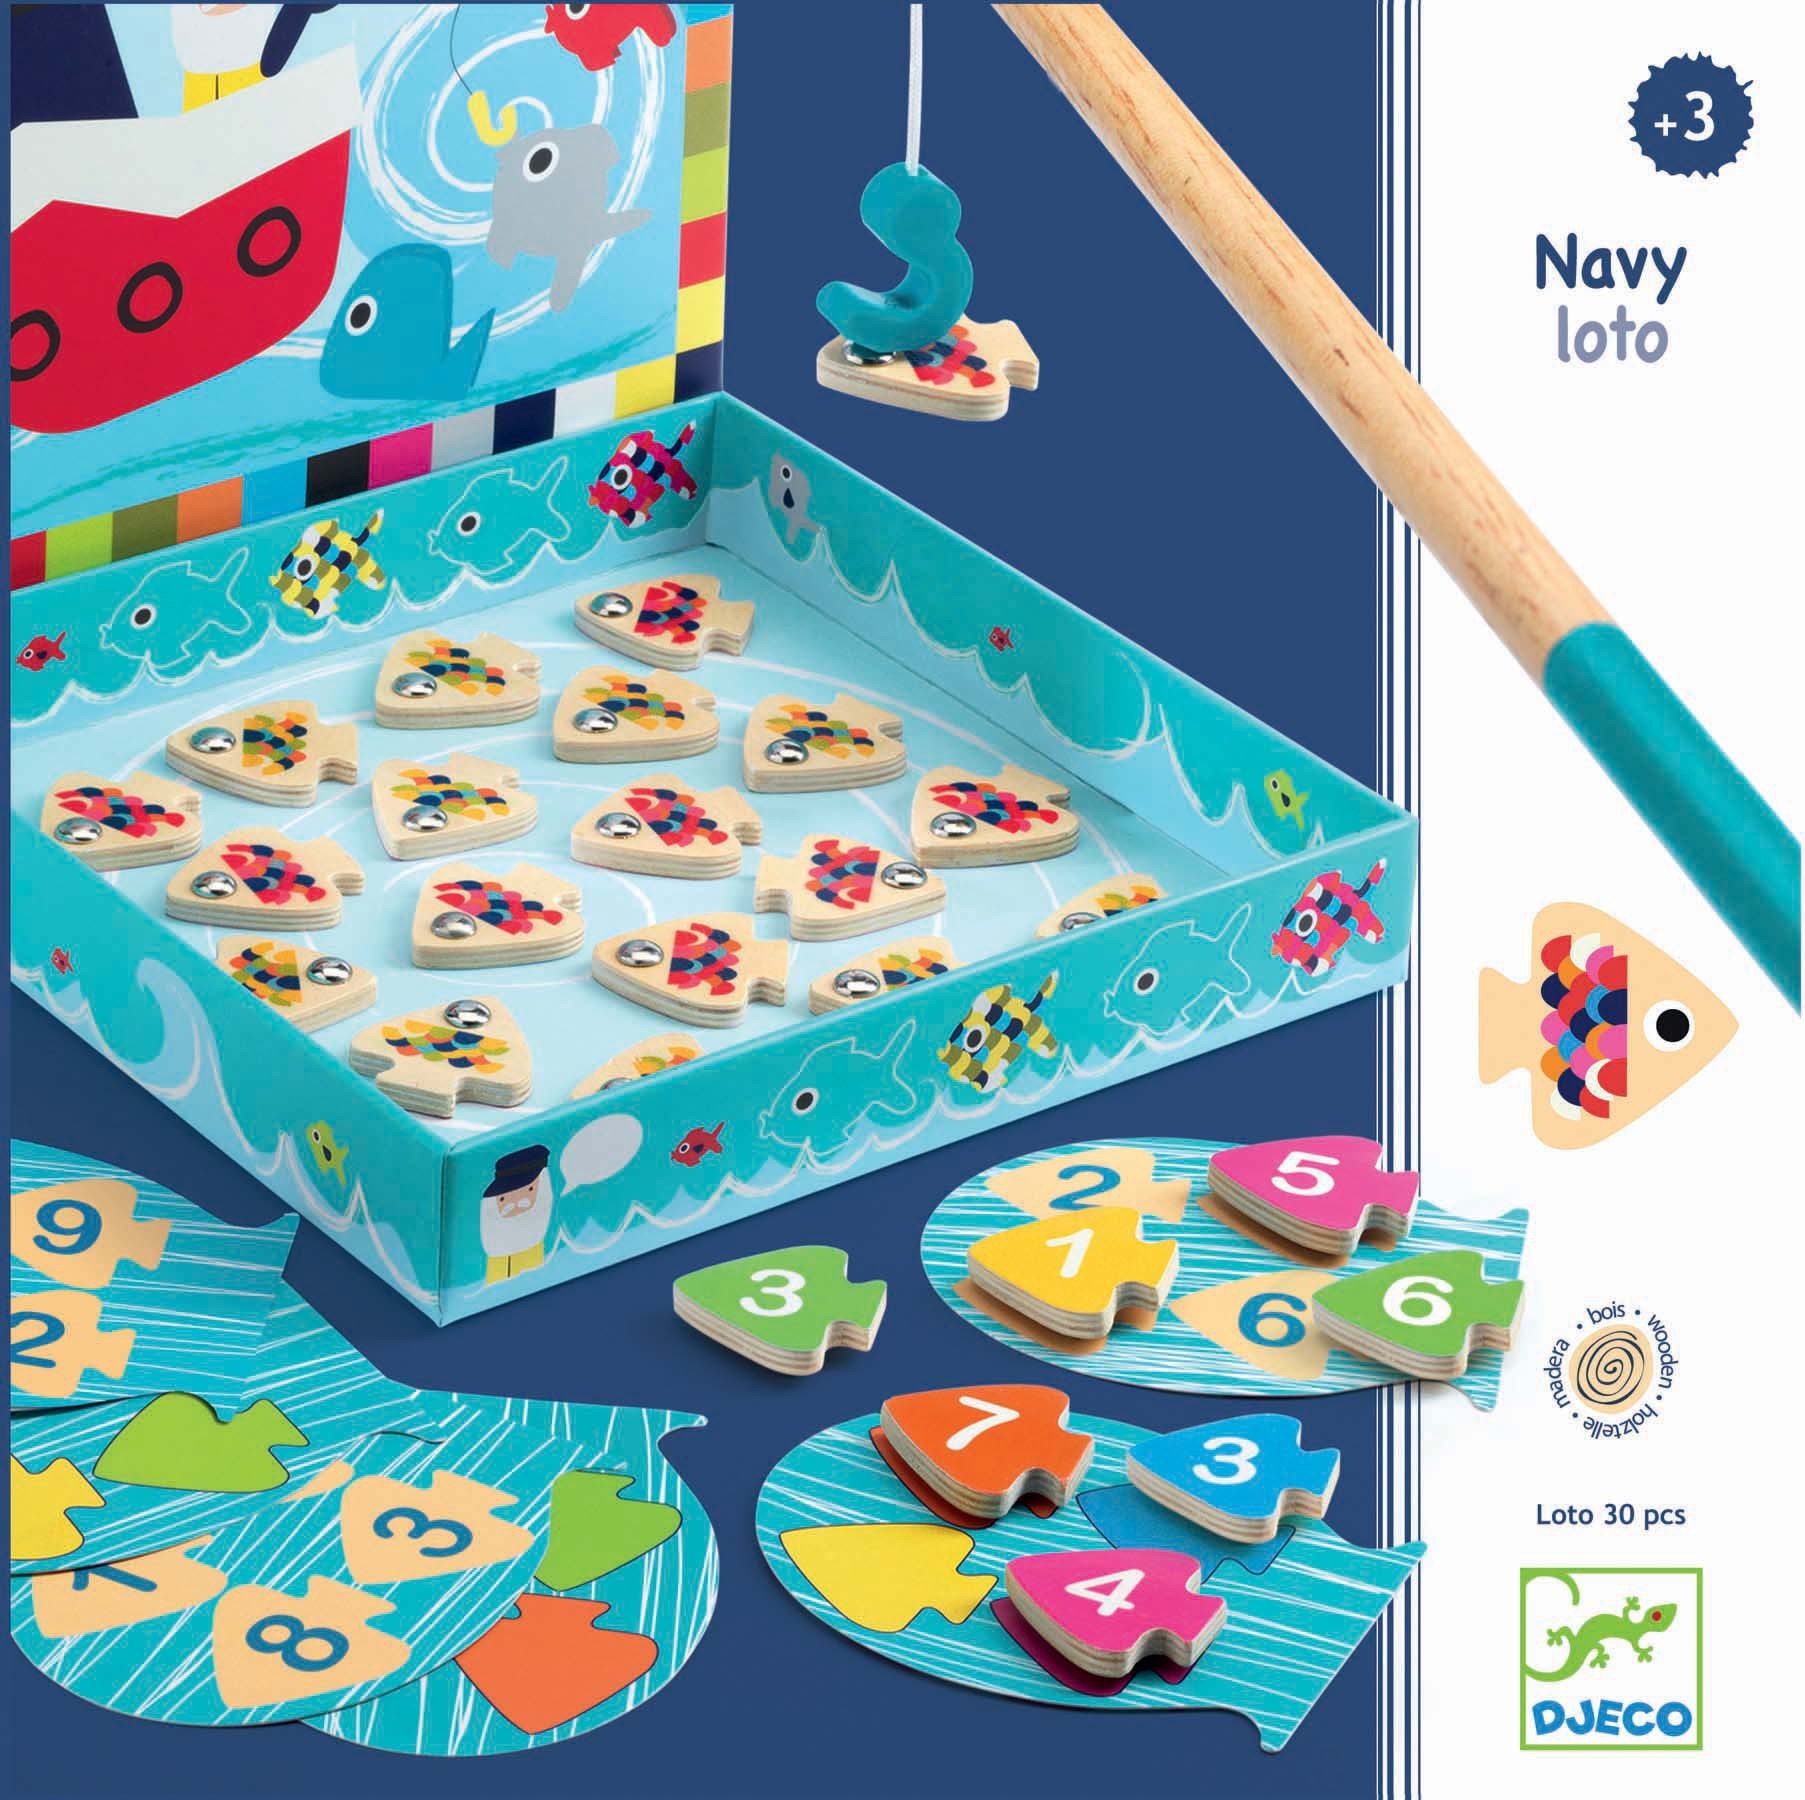 Boîte du jeu Navy Loto